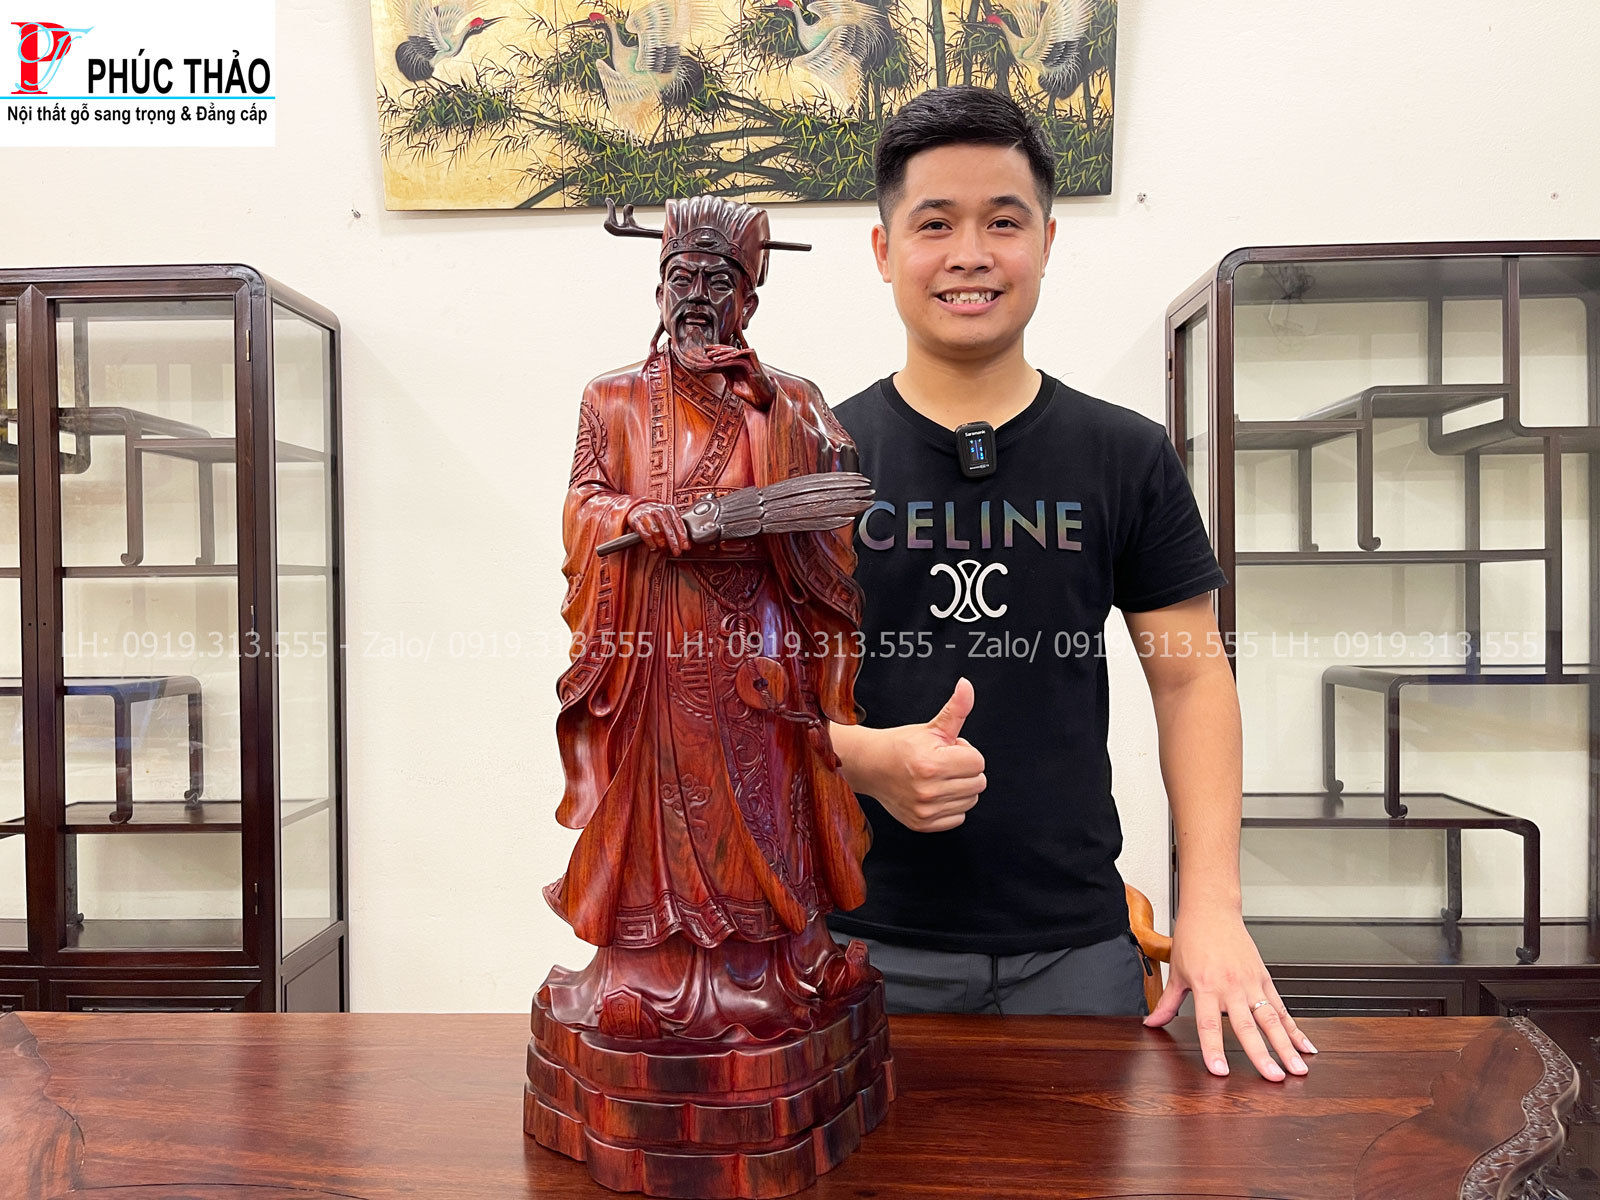 Tượng Gia Cát Lượng ( Khổng Minh ) - Bức tượng mang linh hồn của vị quân sư lừng danh đời Hán